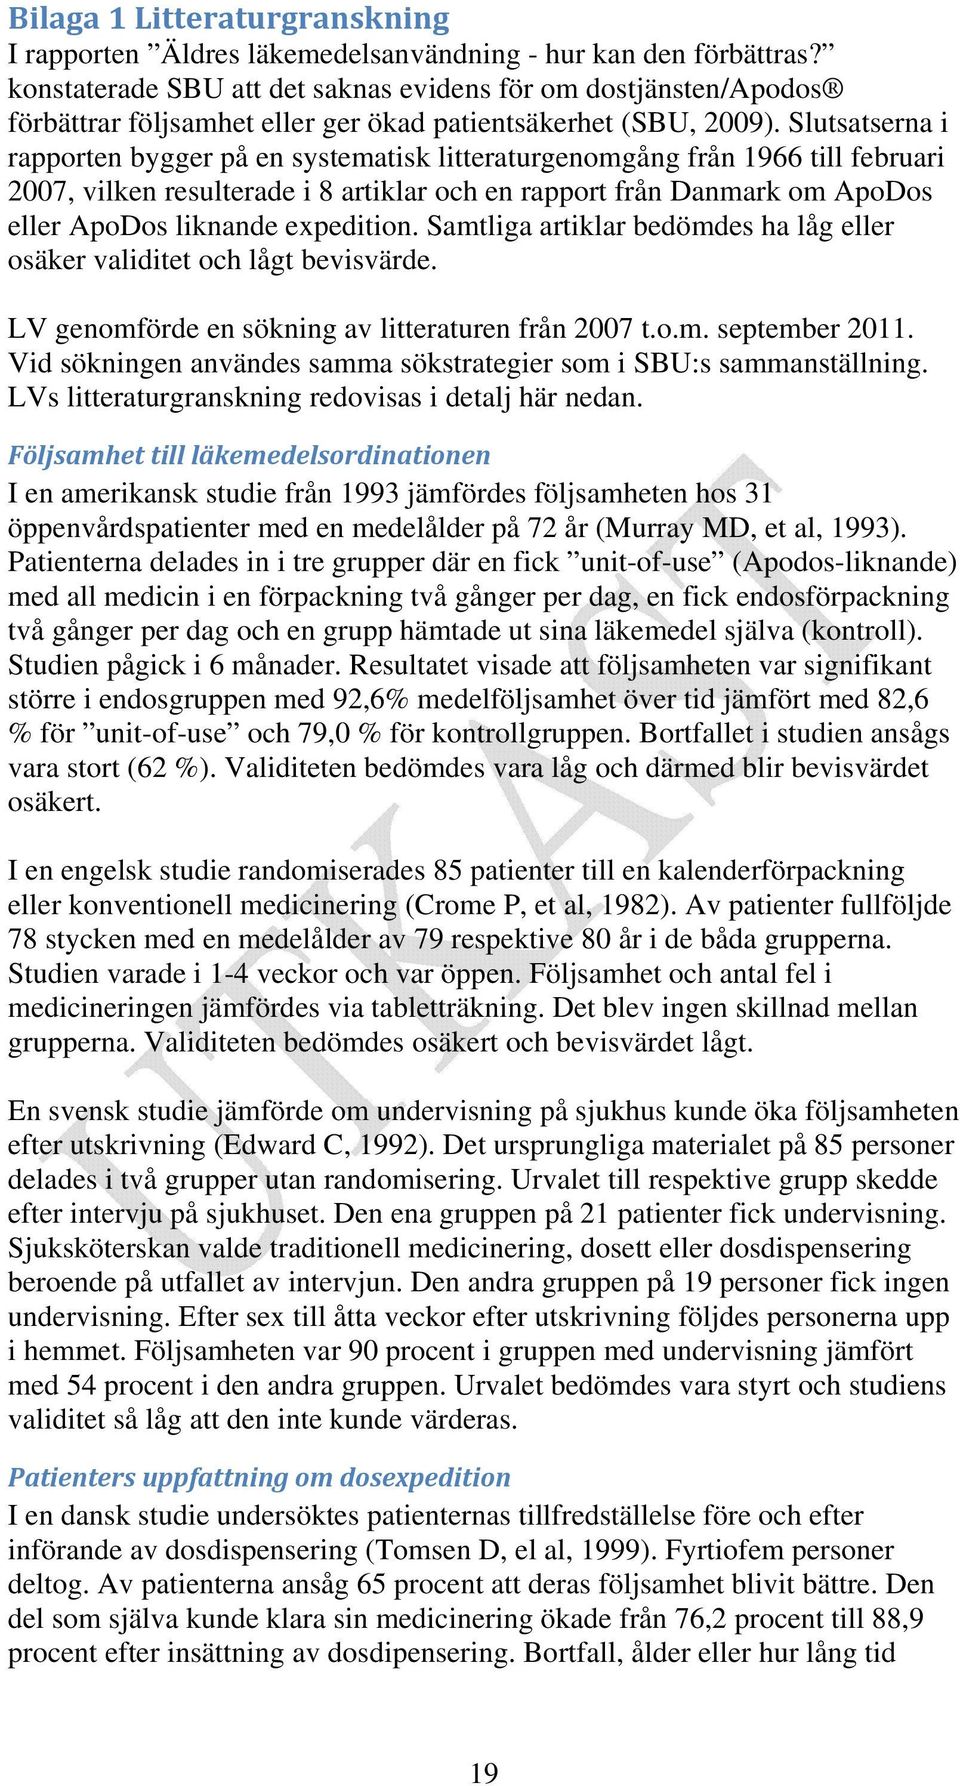 Slutsatserna i rapporten bygger på en systematisk litteraturgenomgång från 1966 till februari 2007, vilken resulterade i 8 artiklar och en rapport från Danmark om ApoDos eller ApoDos liknande